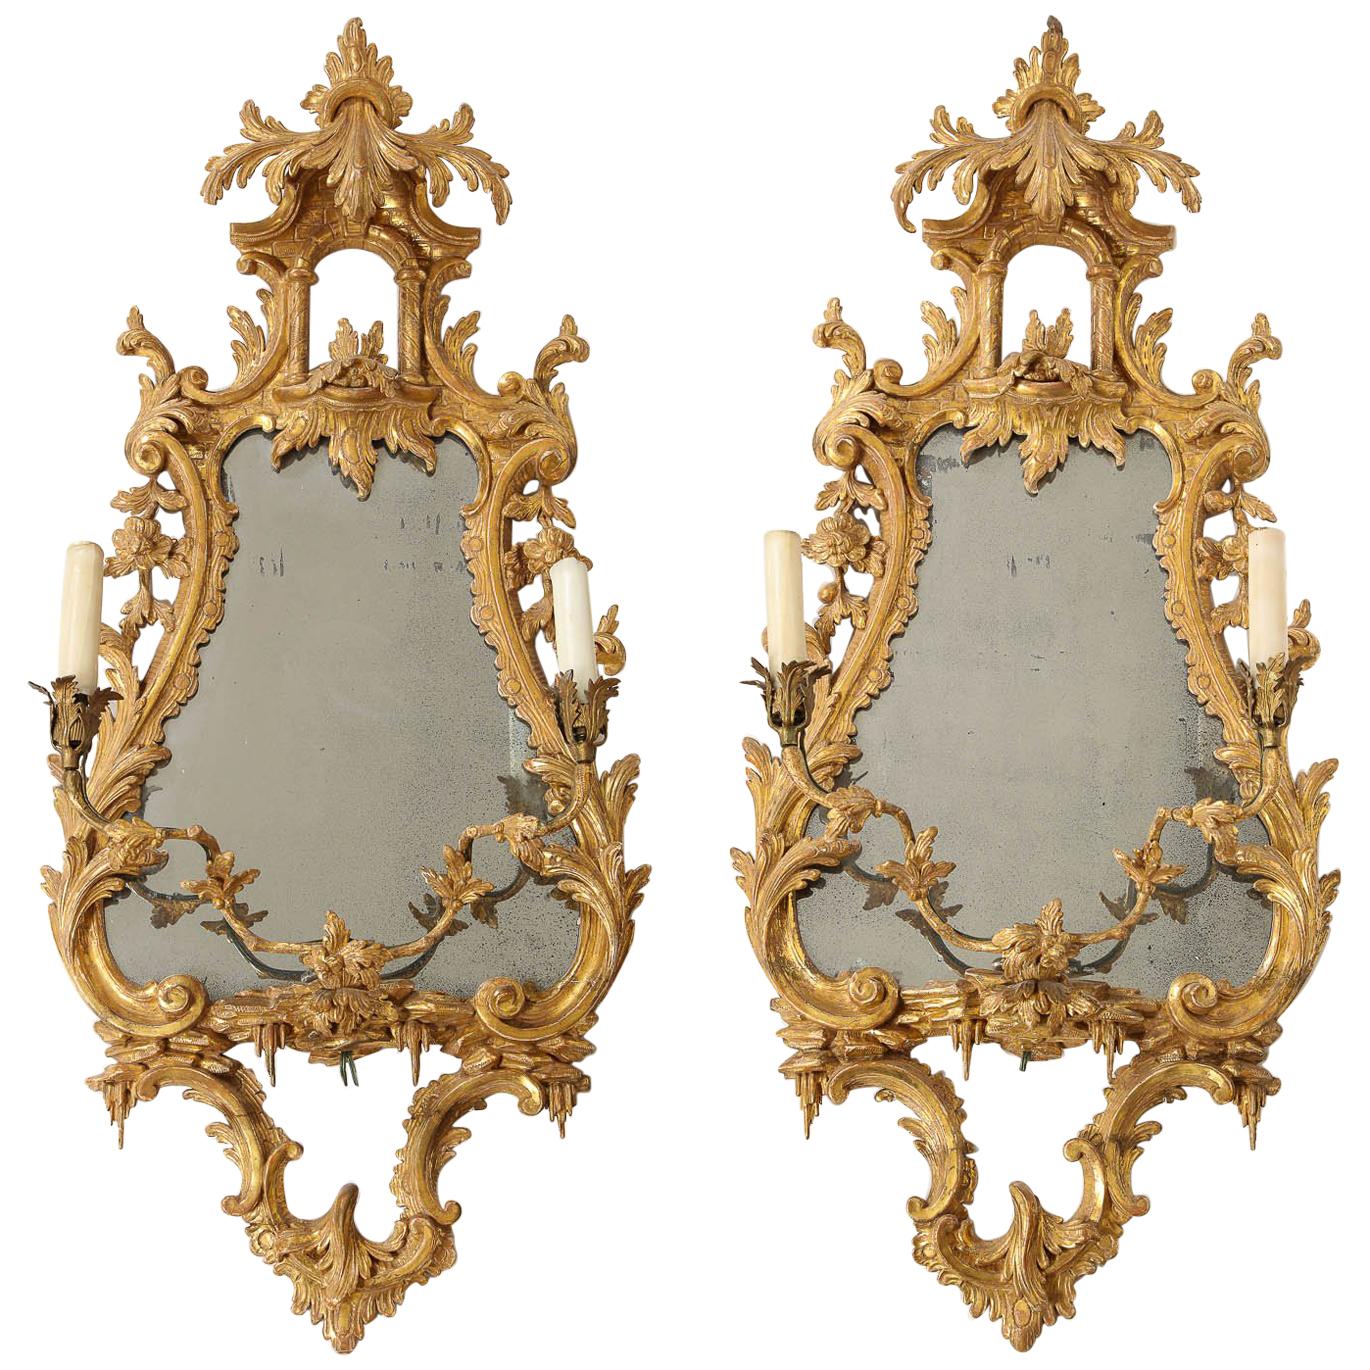 Paire de miroirs chinoiseries en bois doré anglais du 18ème siècle avec bougeoirs